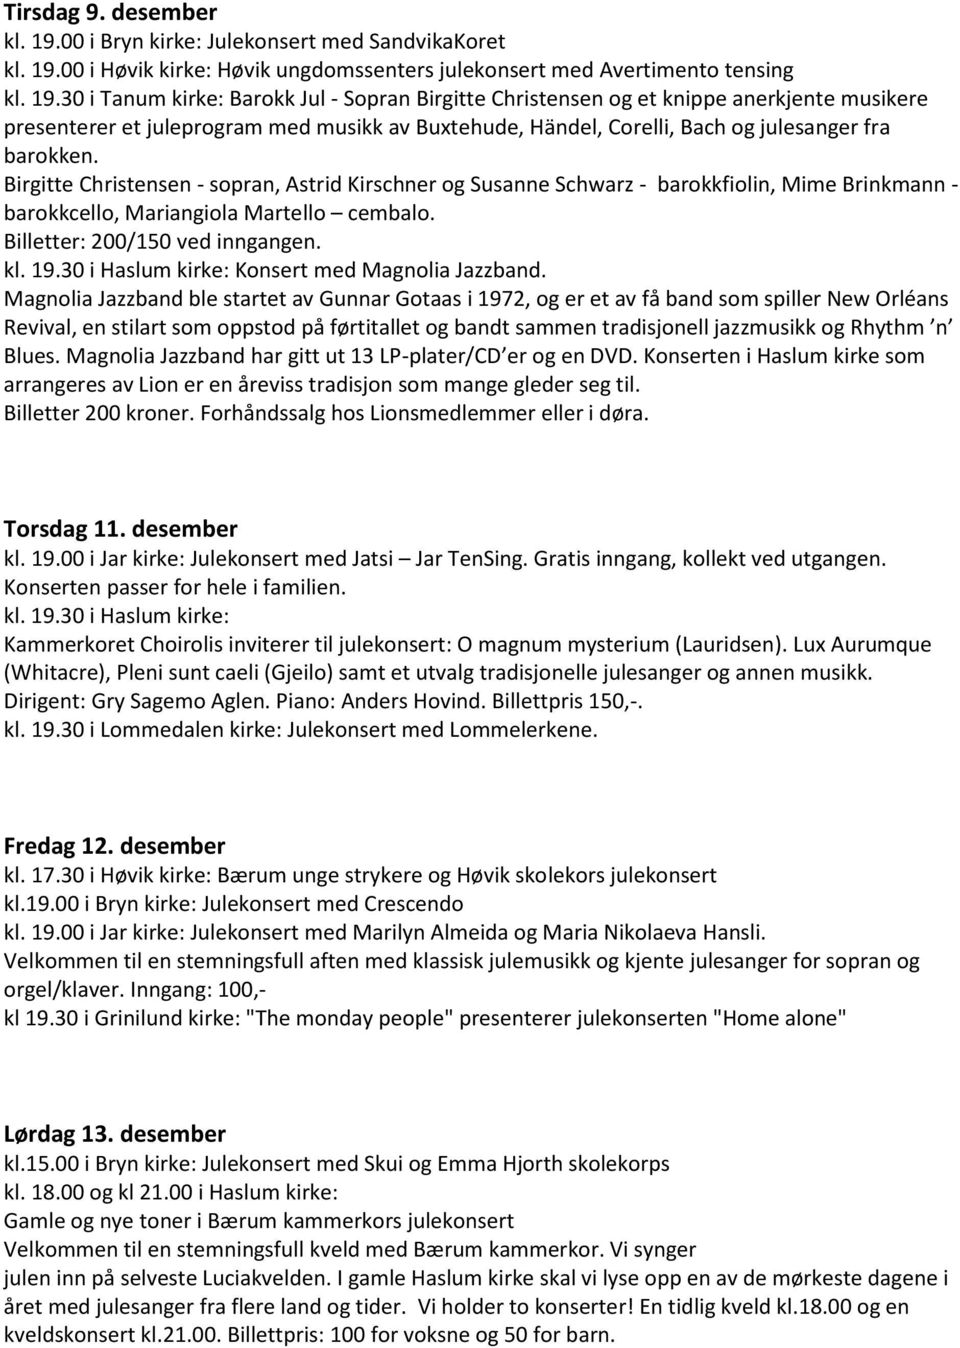 00 i Høvik kirke: Høvik ungdomssenters julekonsert med Avertimento tensing kl. 19.